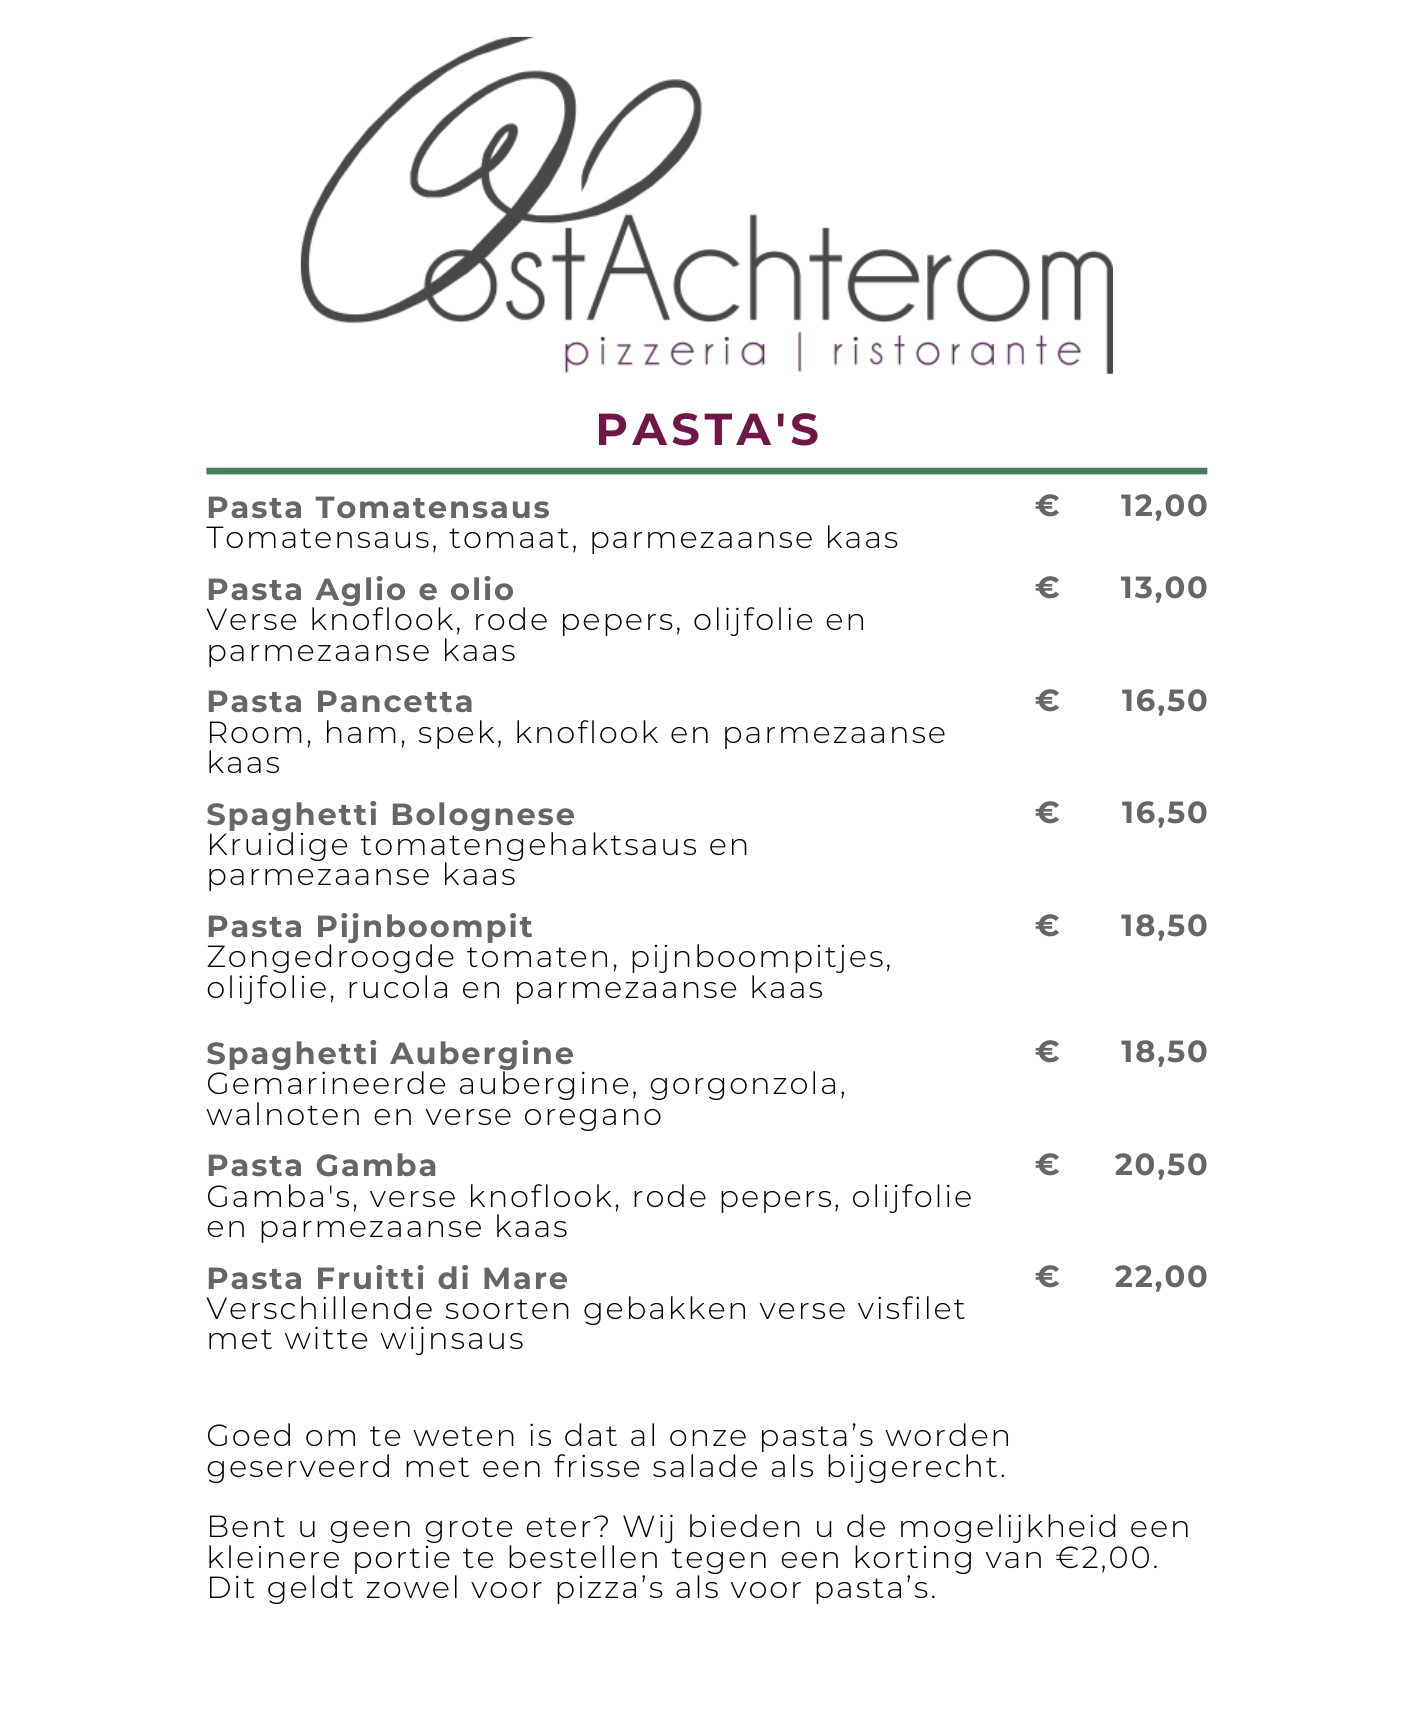 Pasta's Oostachterom